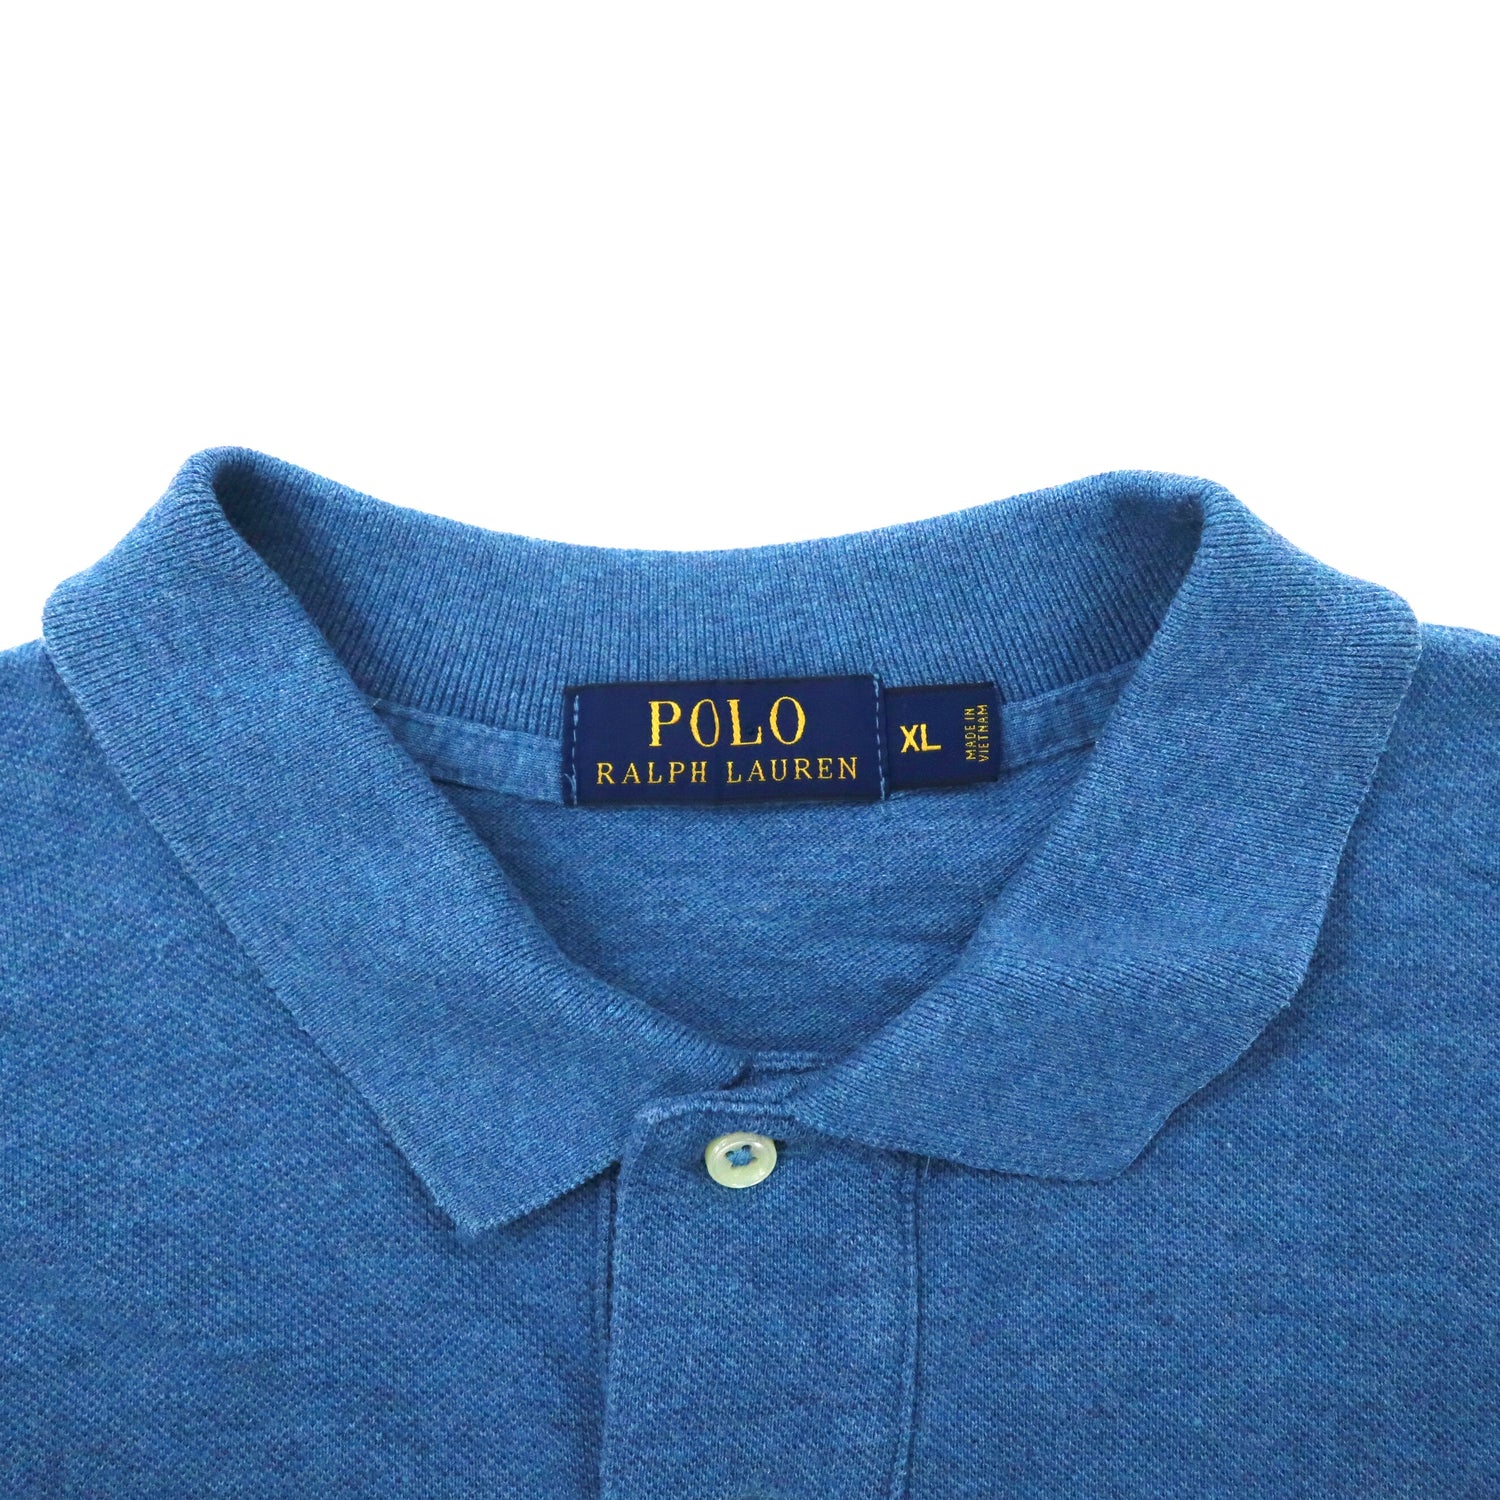 POLO RALPH LAUREN ビッグサイズ 長袖ポロシャツ XL ブルー コットン 